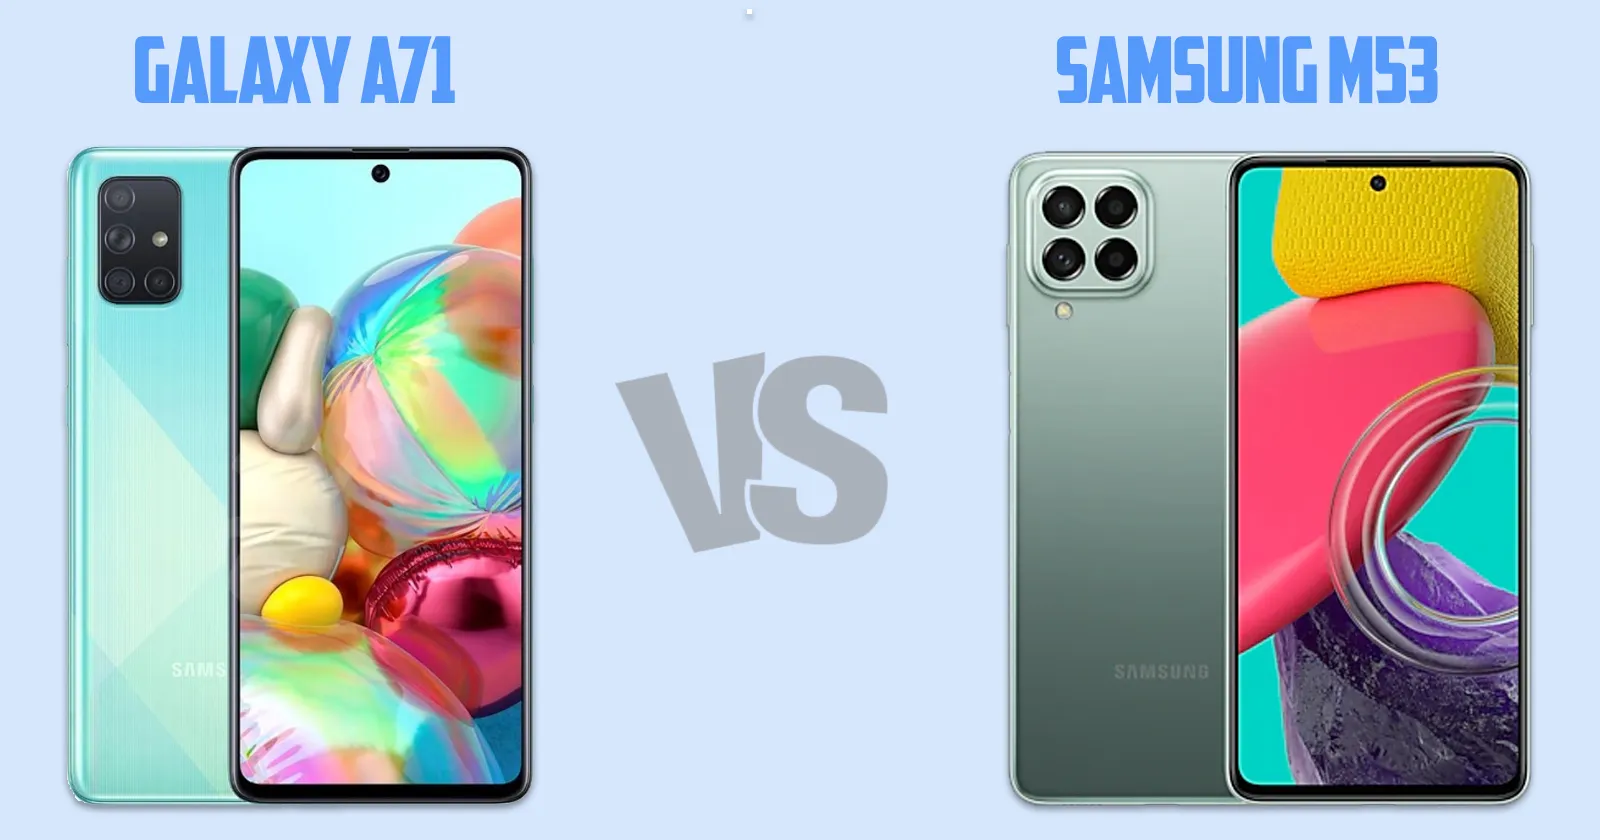 Samsung Galaxy A71 vs Samsung Galaxy M53 [ Full Comparison ]